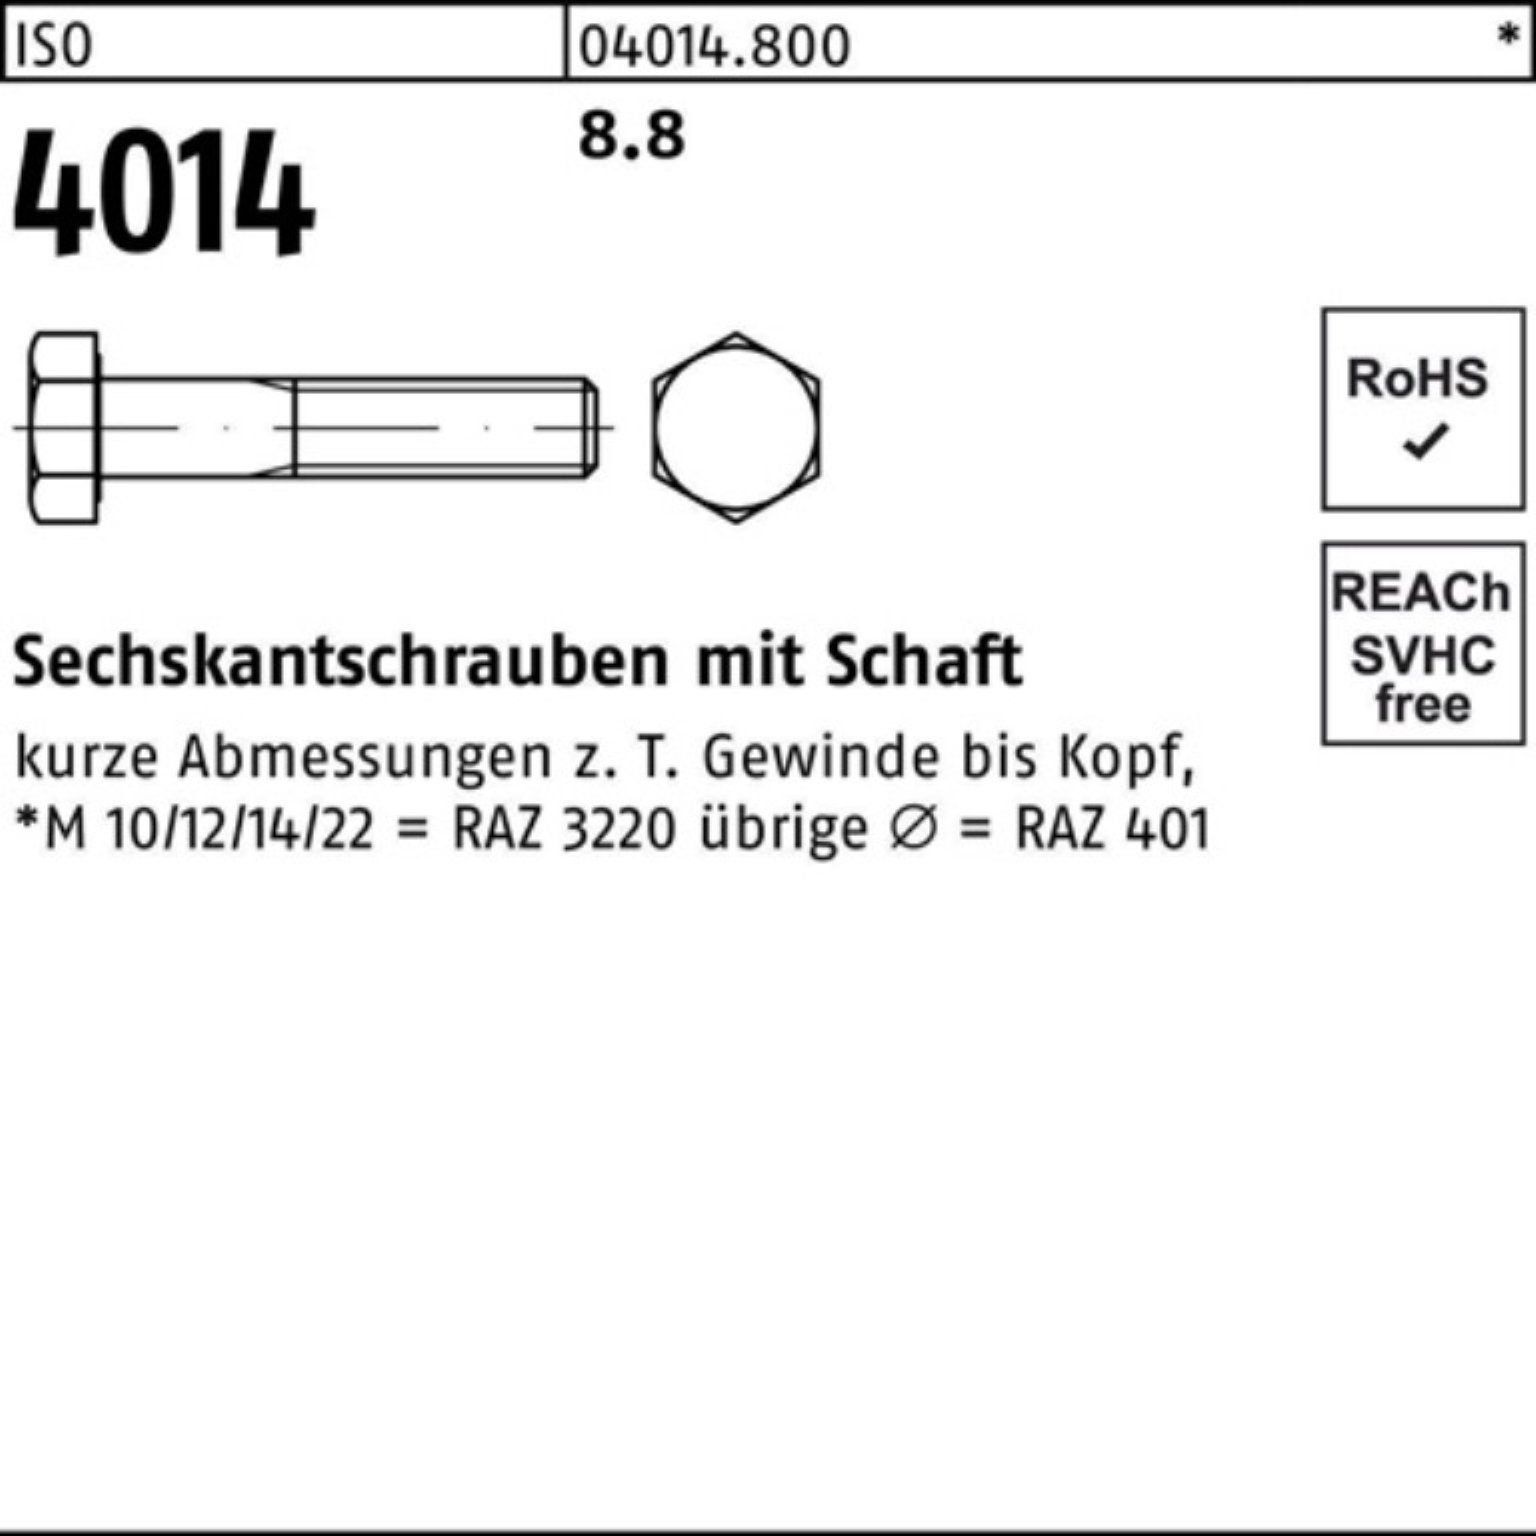 IS 290 Sechskantschraube 4014 Stück 50 Sechskantschraube Bufab ISO 100er 8.8 Schaft M10x Pack